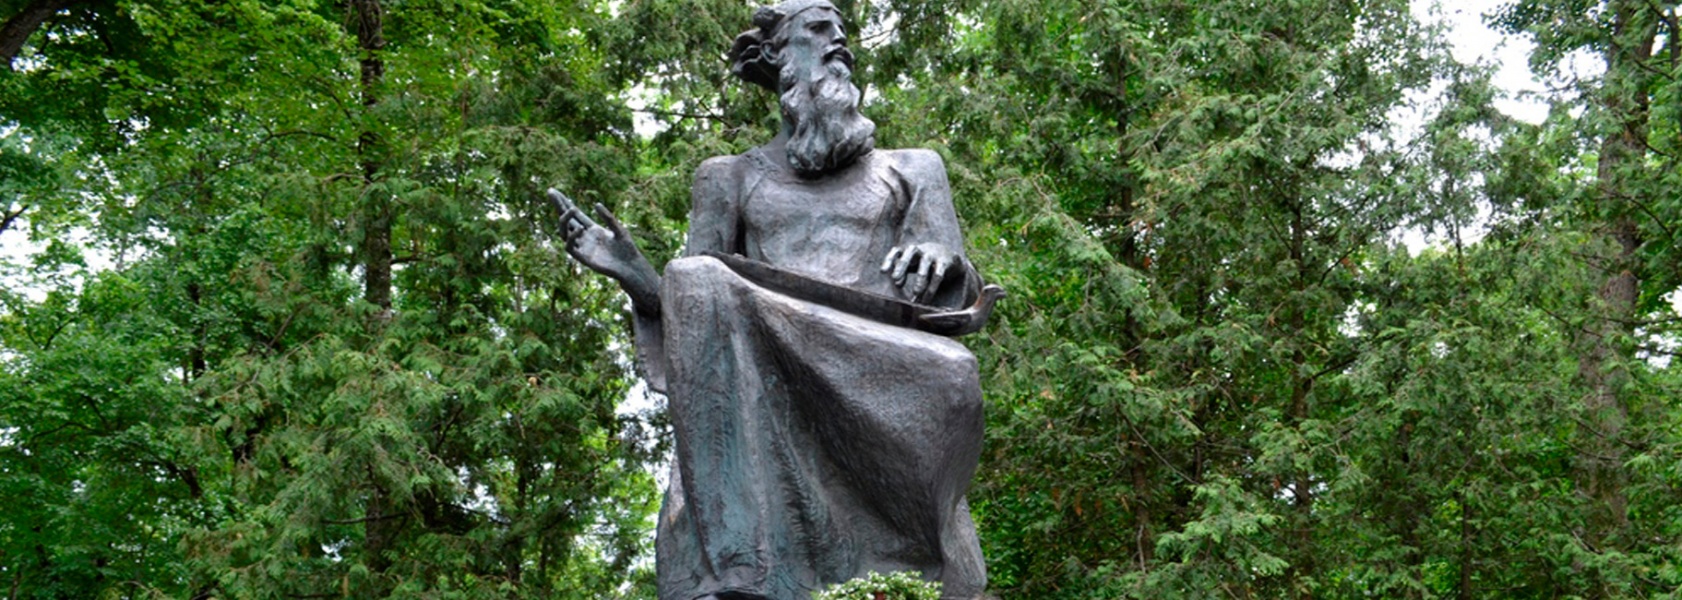 Памятник Бояну - древнерусскому поэту, город Трубчевск